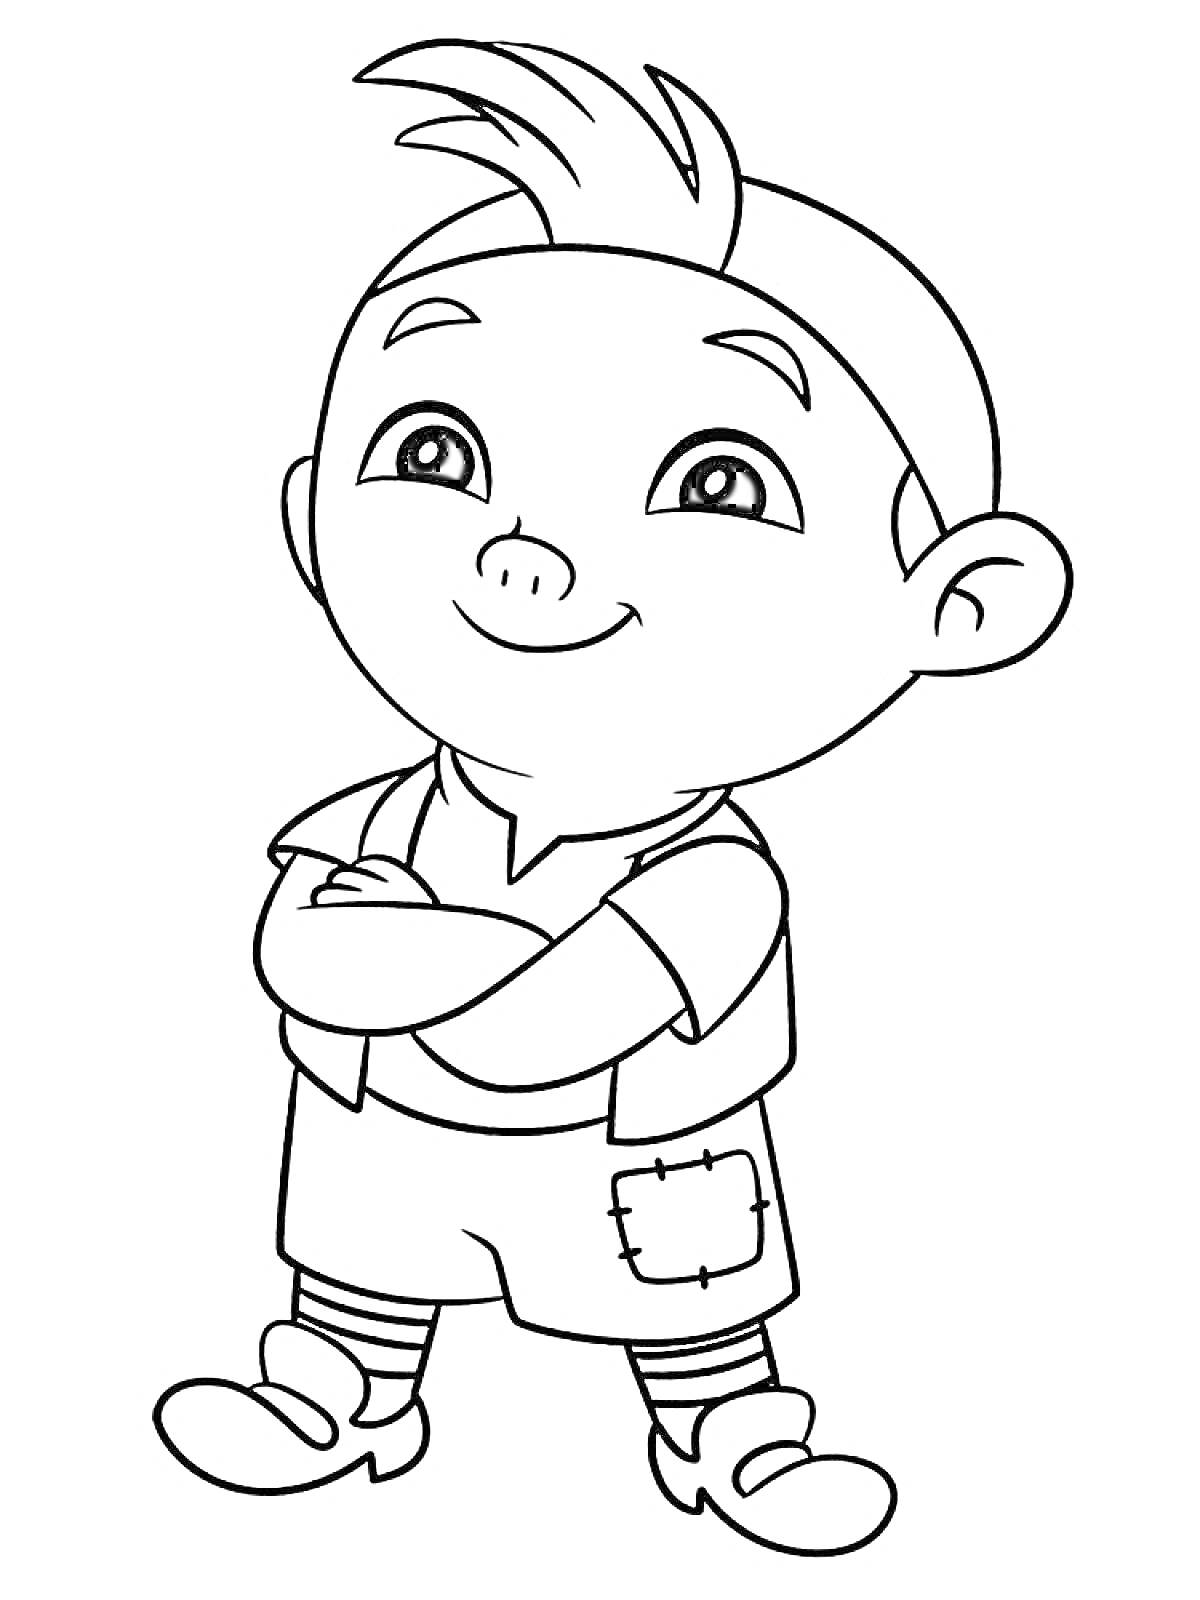 Раскраска рисунок мальчика с короткой прической и челкой, скрестившего руки, одетого в футболку с жилетом, шорты с заплаткой, полосатые носки и ботинки